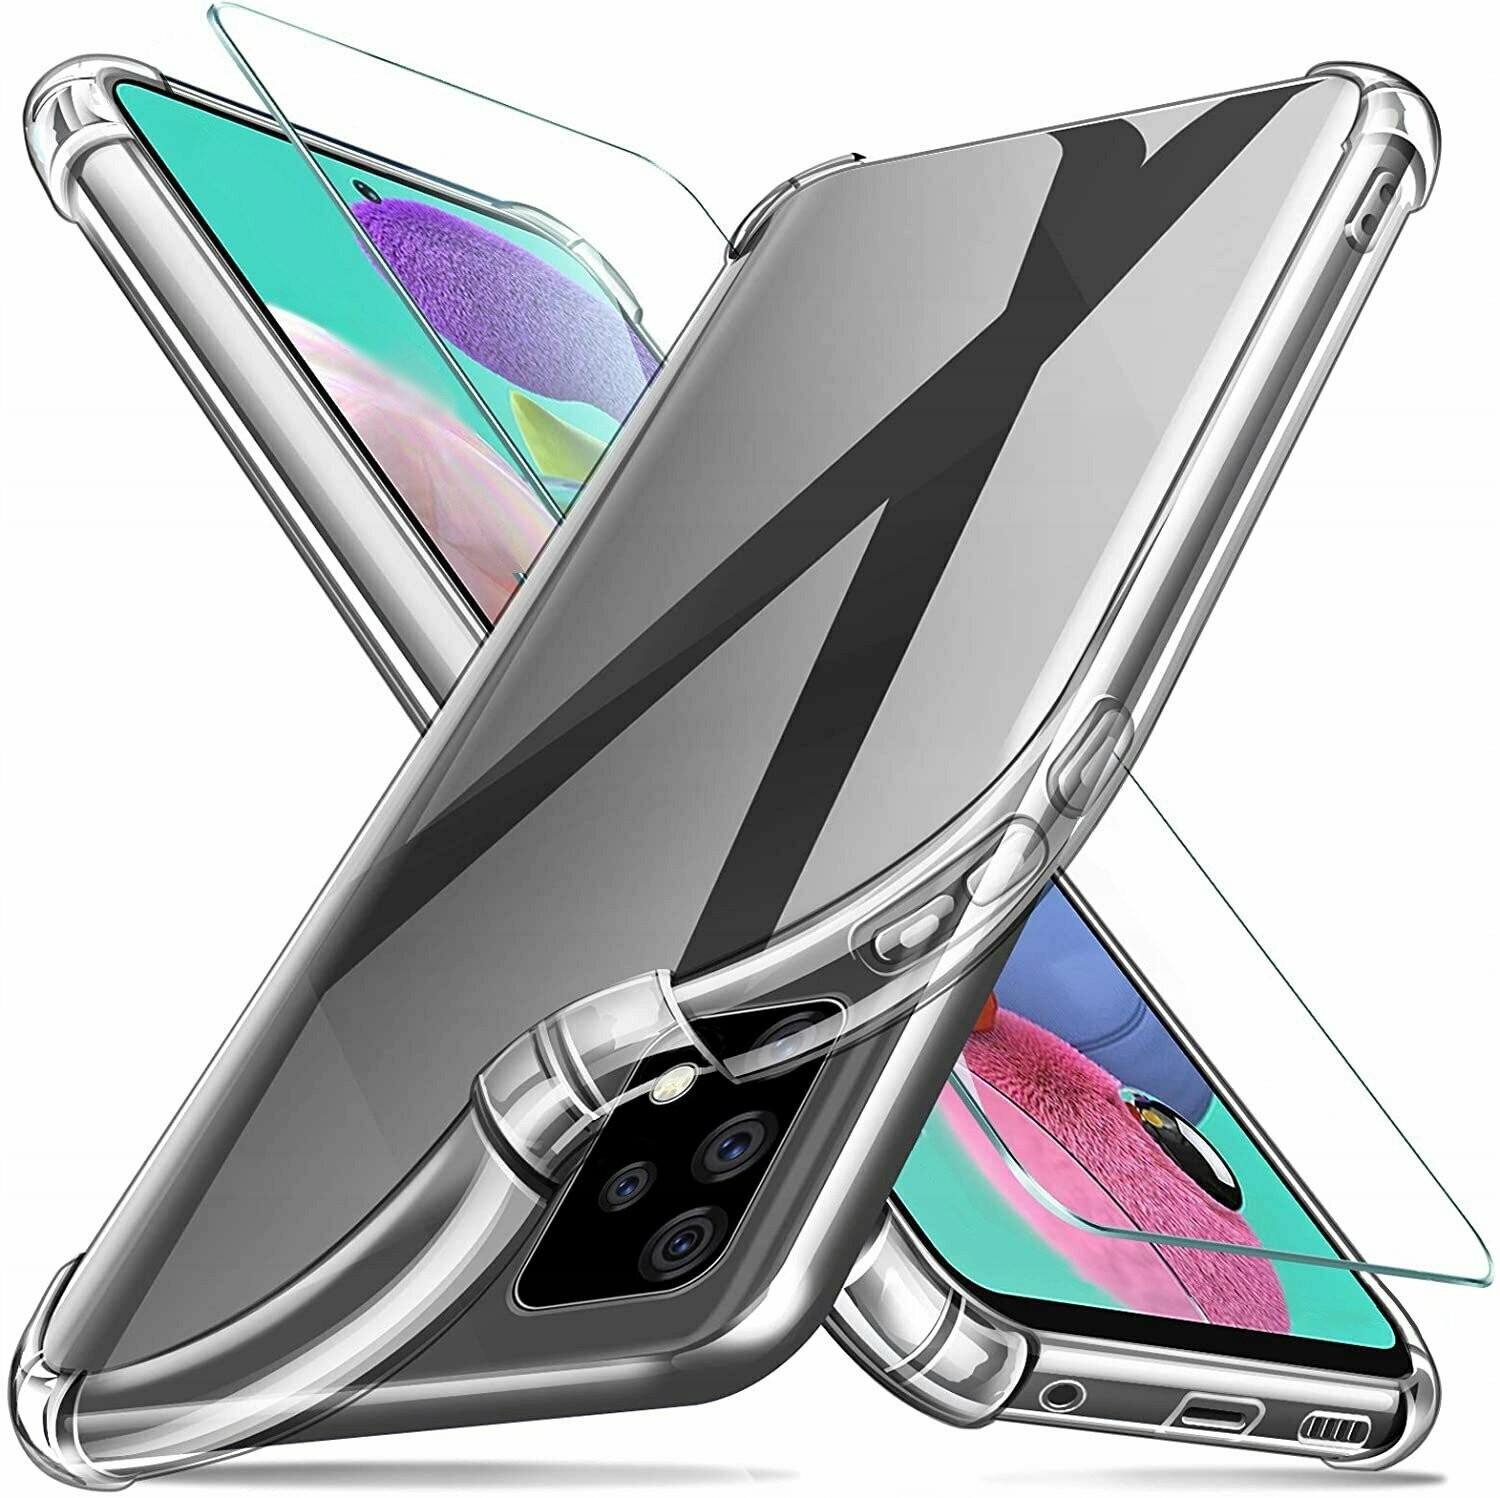 Anti Schock Handyhülle für Samsung A72 5G Handy Back Cover Schutz Case